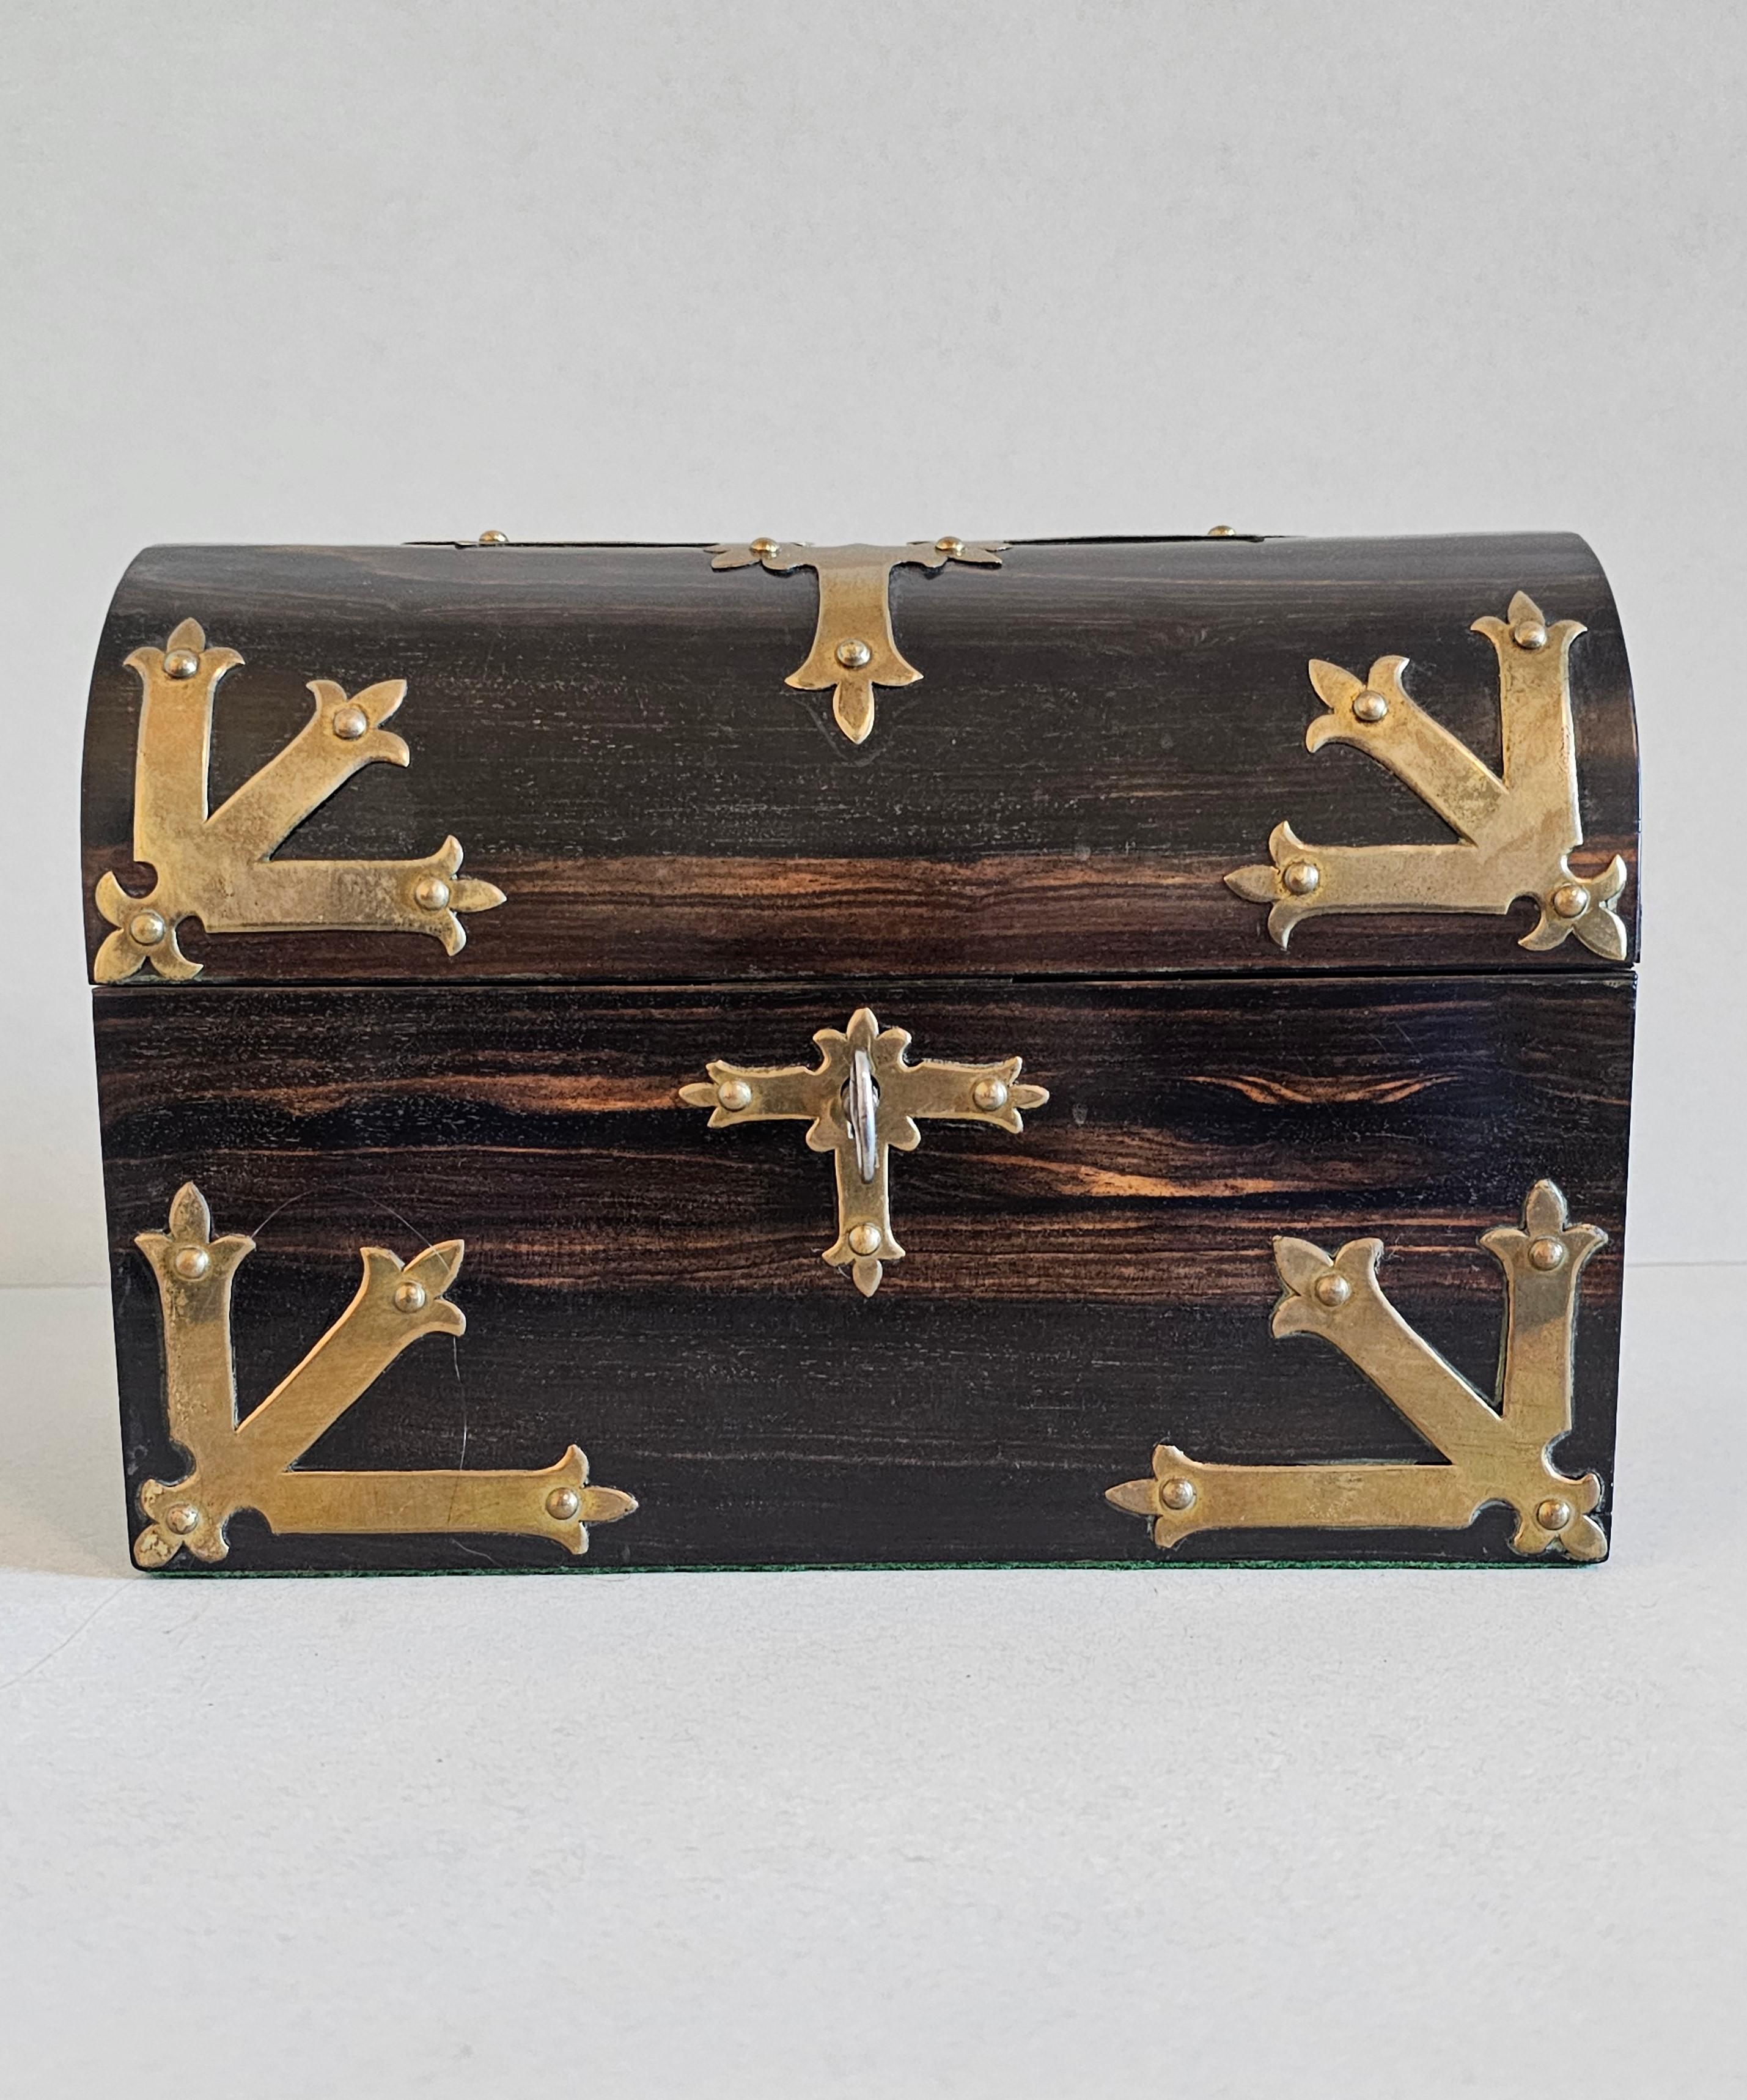 Eine atemberaubende sehr feine Qualität antike englische Schreibwaren-Box in markanten exotischen Hartholz Koromandel / Madagaskar Ebenholz. circa 1880

Exquisit handgefertigt in England im 19. Jahrhundert, zugeschrieben einem der besten Londoner